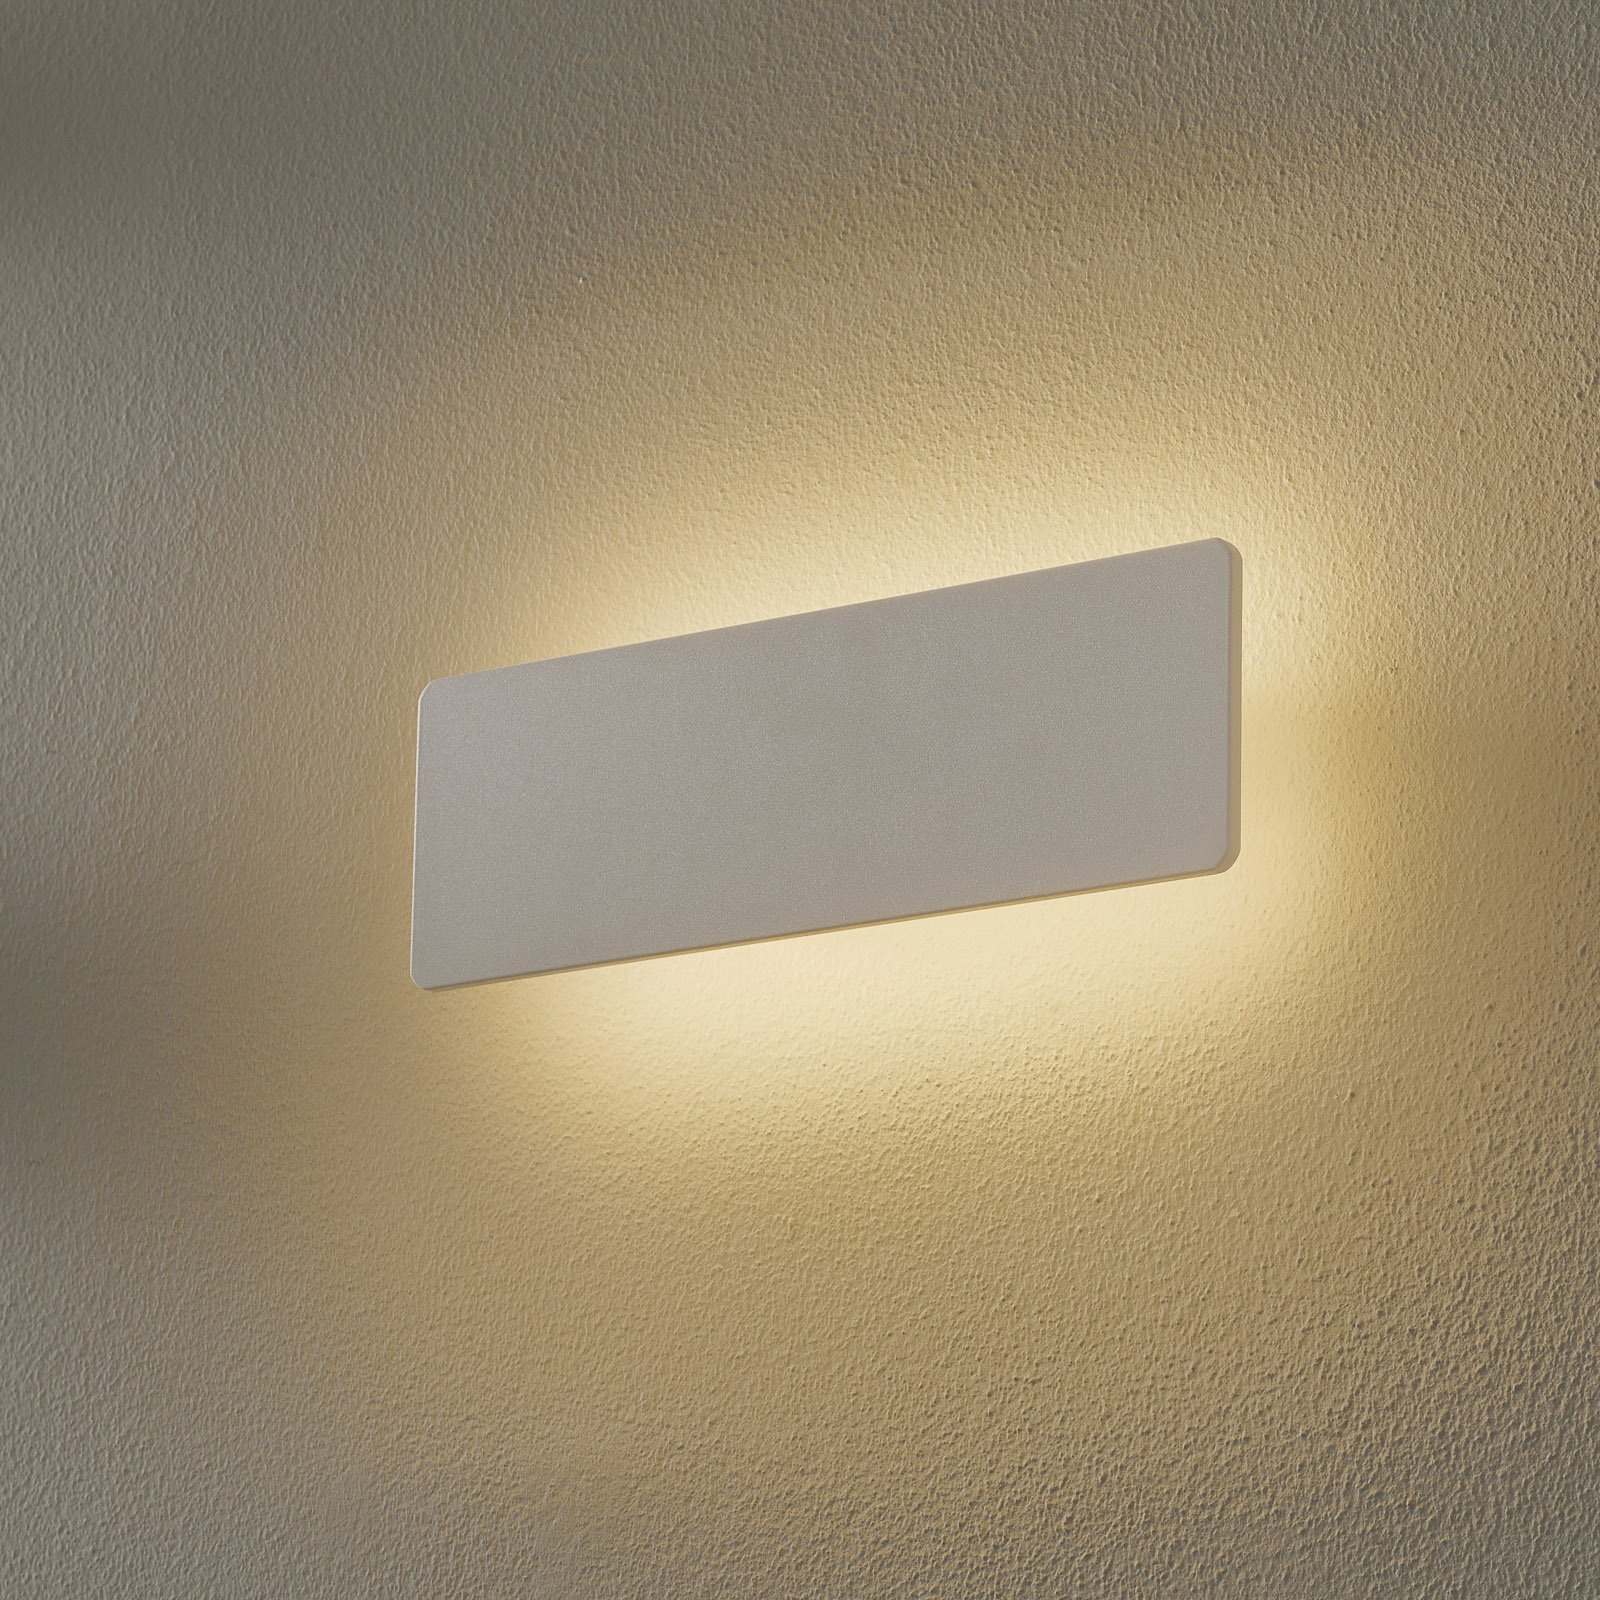 Zig Zag LED wall light, white, width 29 cm